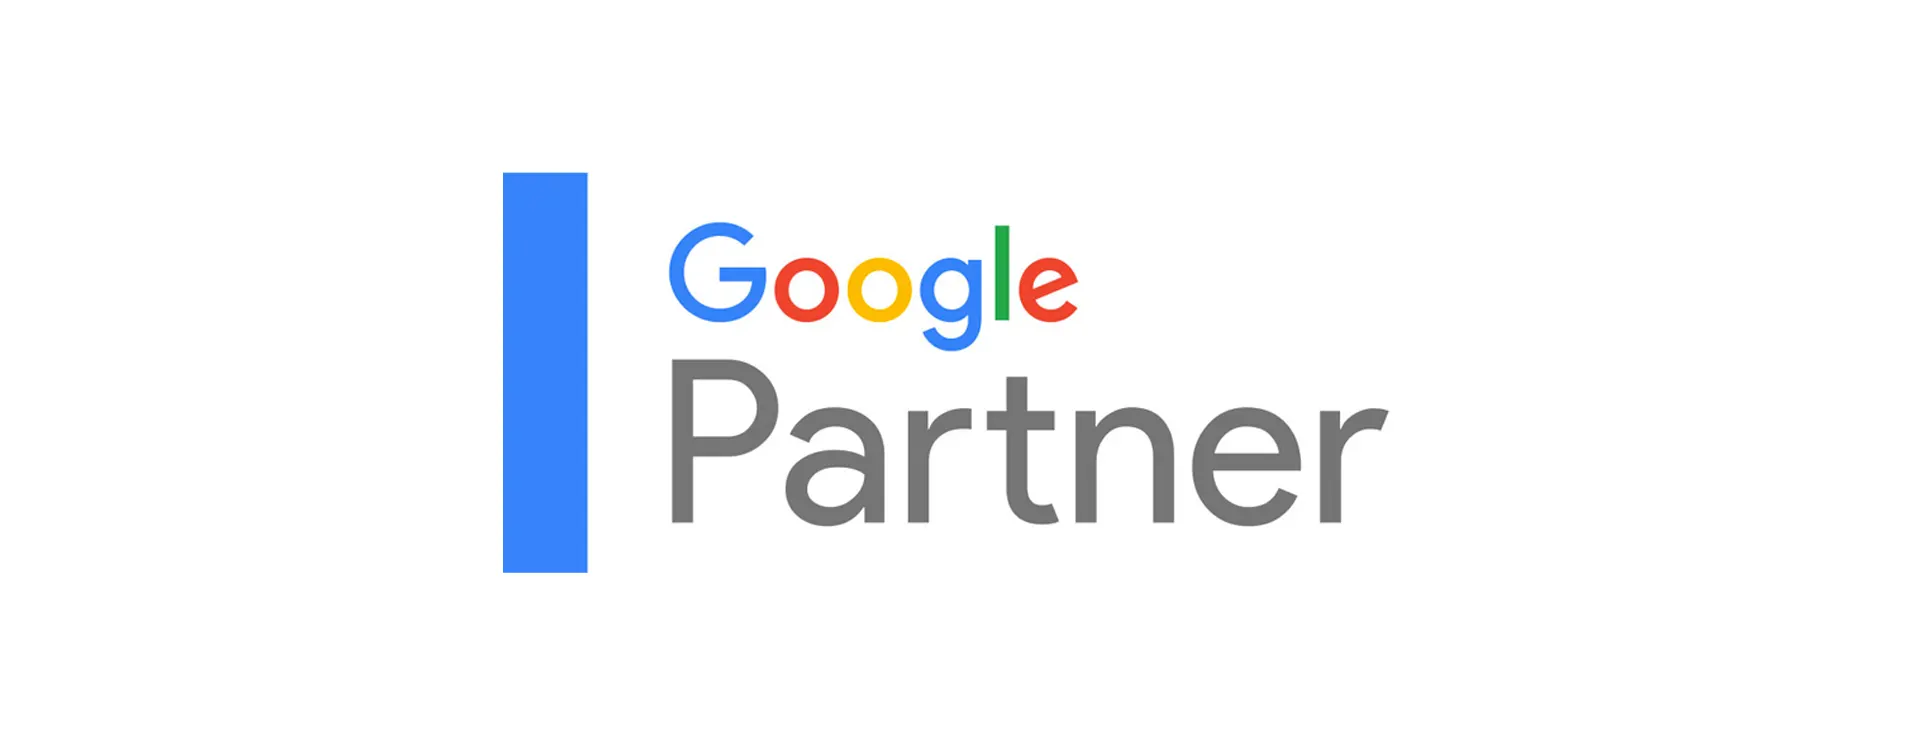 google partner el evento explicado